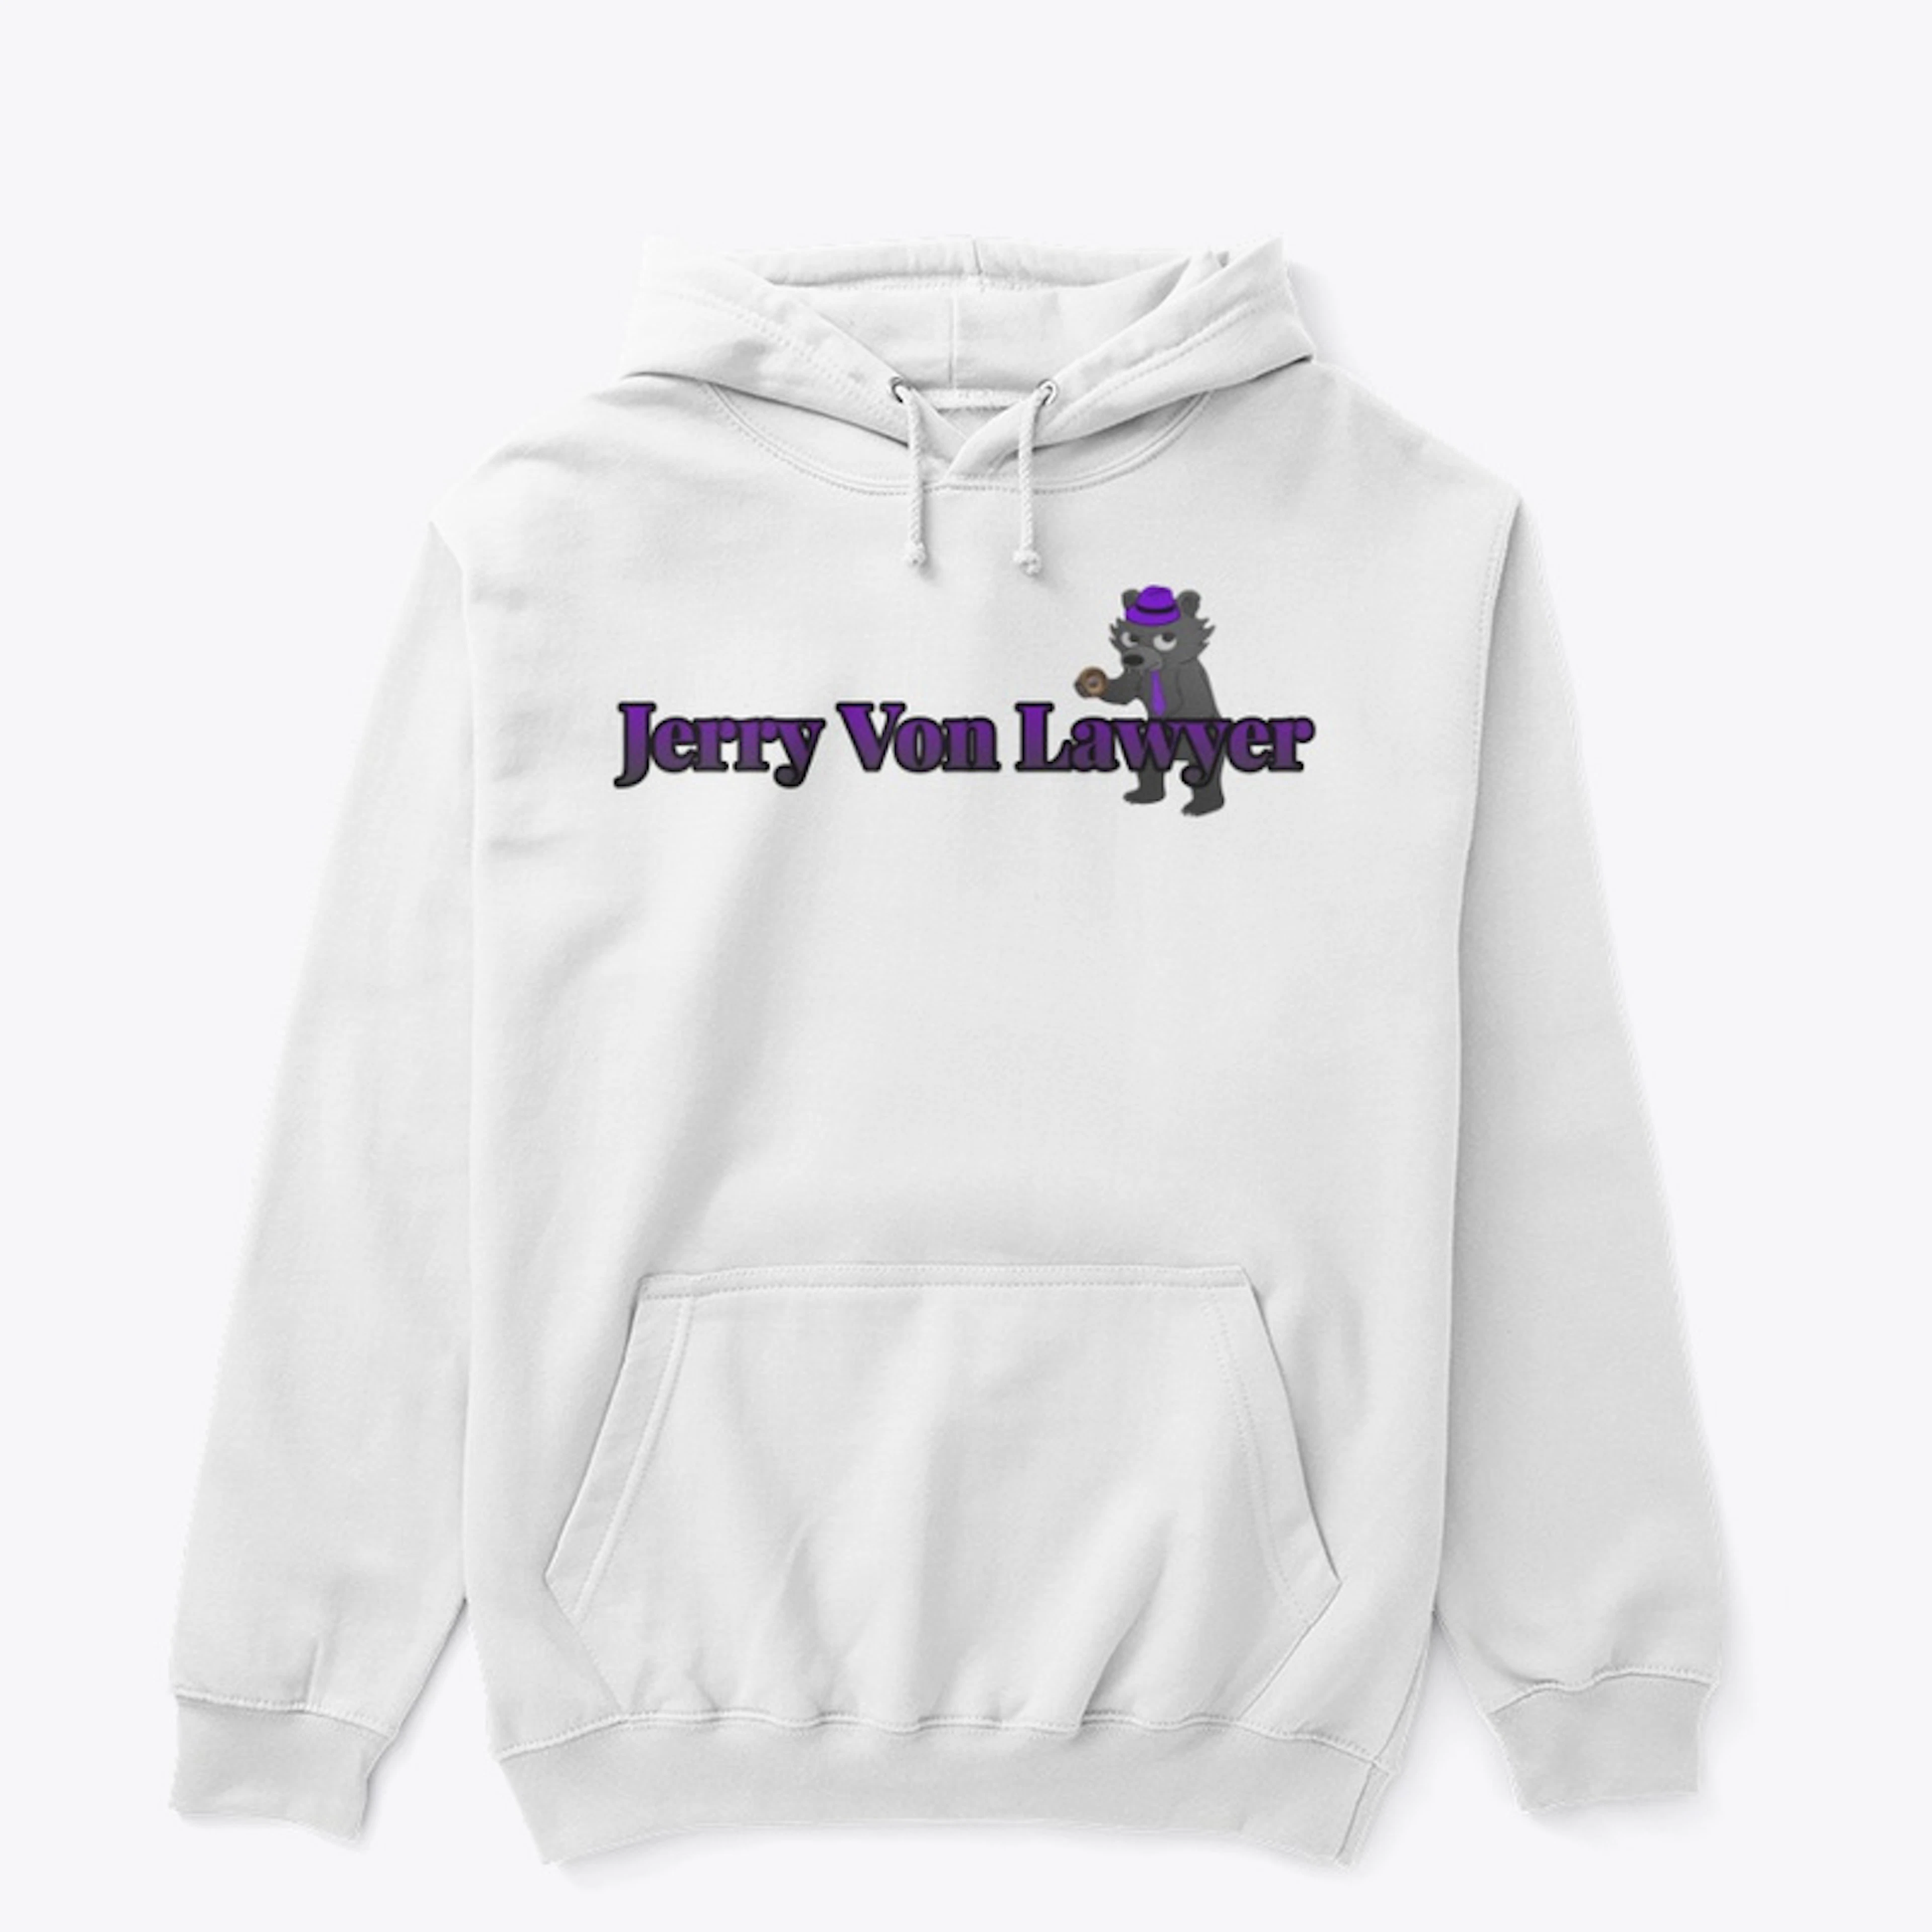 Jerry Von Lawyer Logo Sweatshirt 